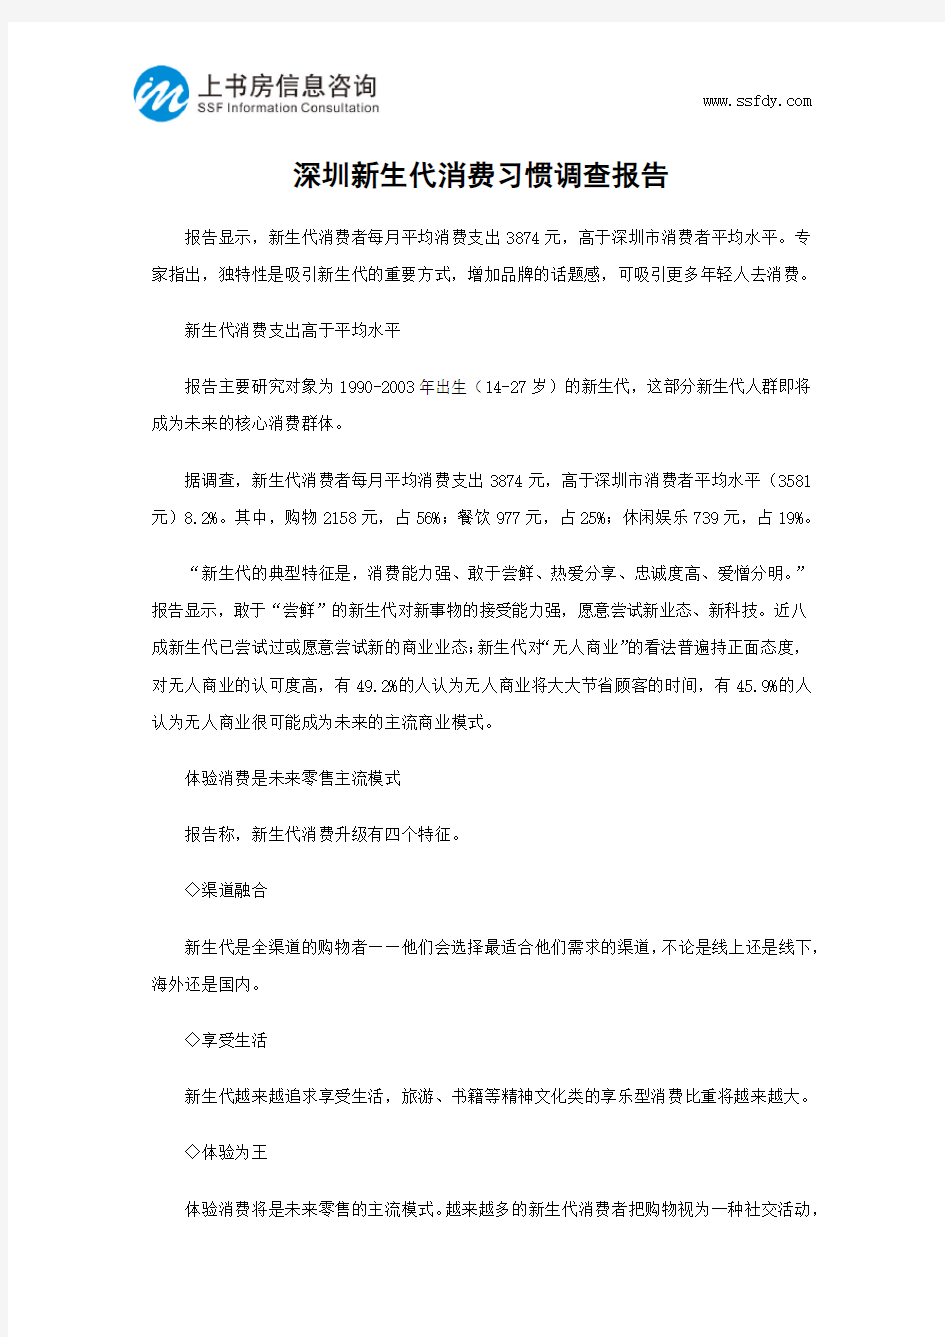 深圳新生代消费习惯调查报告-上书房信息咨询